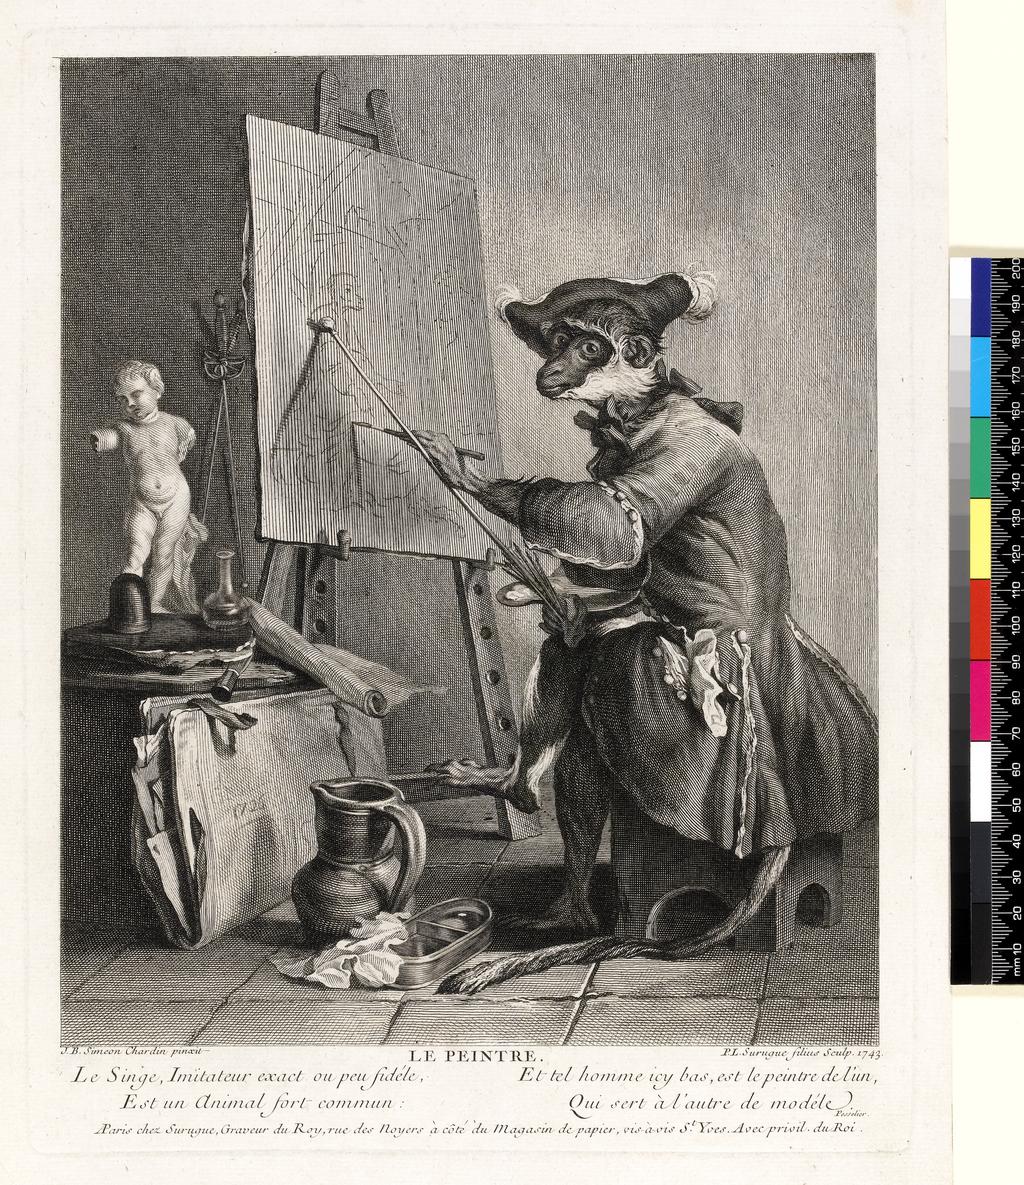 An image of Le Peintre. Le Singe Peintre. Surugue, Pierre-Louis de. After Chardin, Jean Baptiste Siméon. Etching, engraving. 1743.